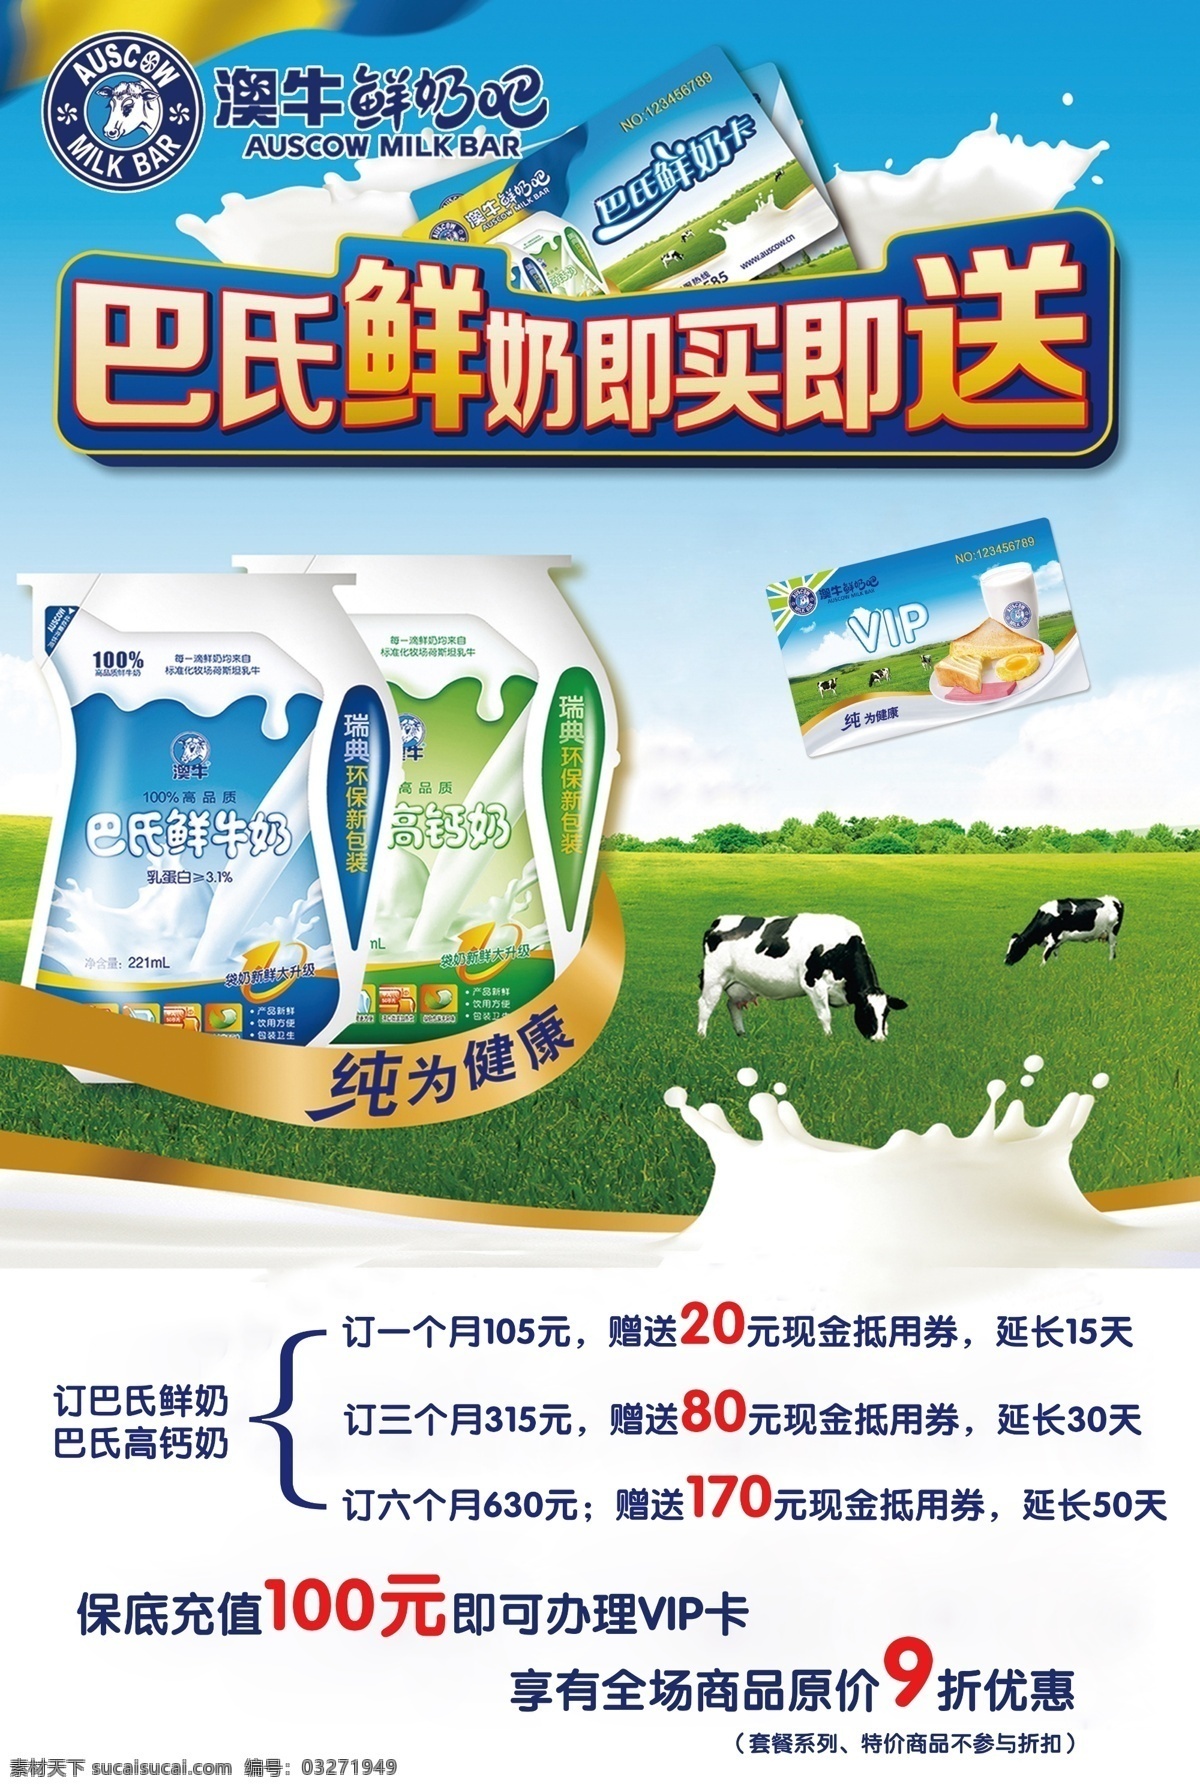 巴氏鲜奶海报 澳牛鲜奶吧 巴氏鲜奶 即买即送 高钙奶 纯为健康 袋装 牛 草原 奶牛 会员卡 牛奶 奶花 天空 云朵 优惠